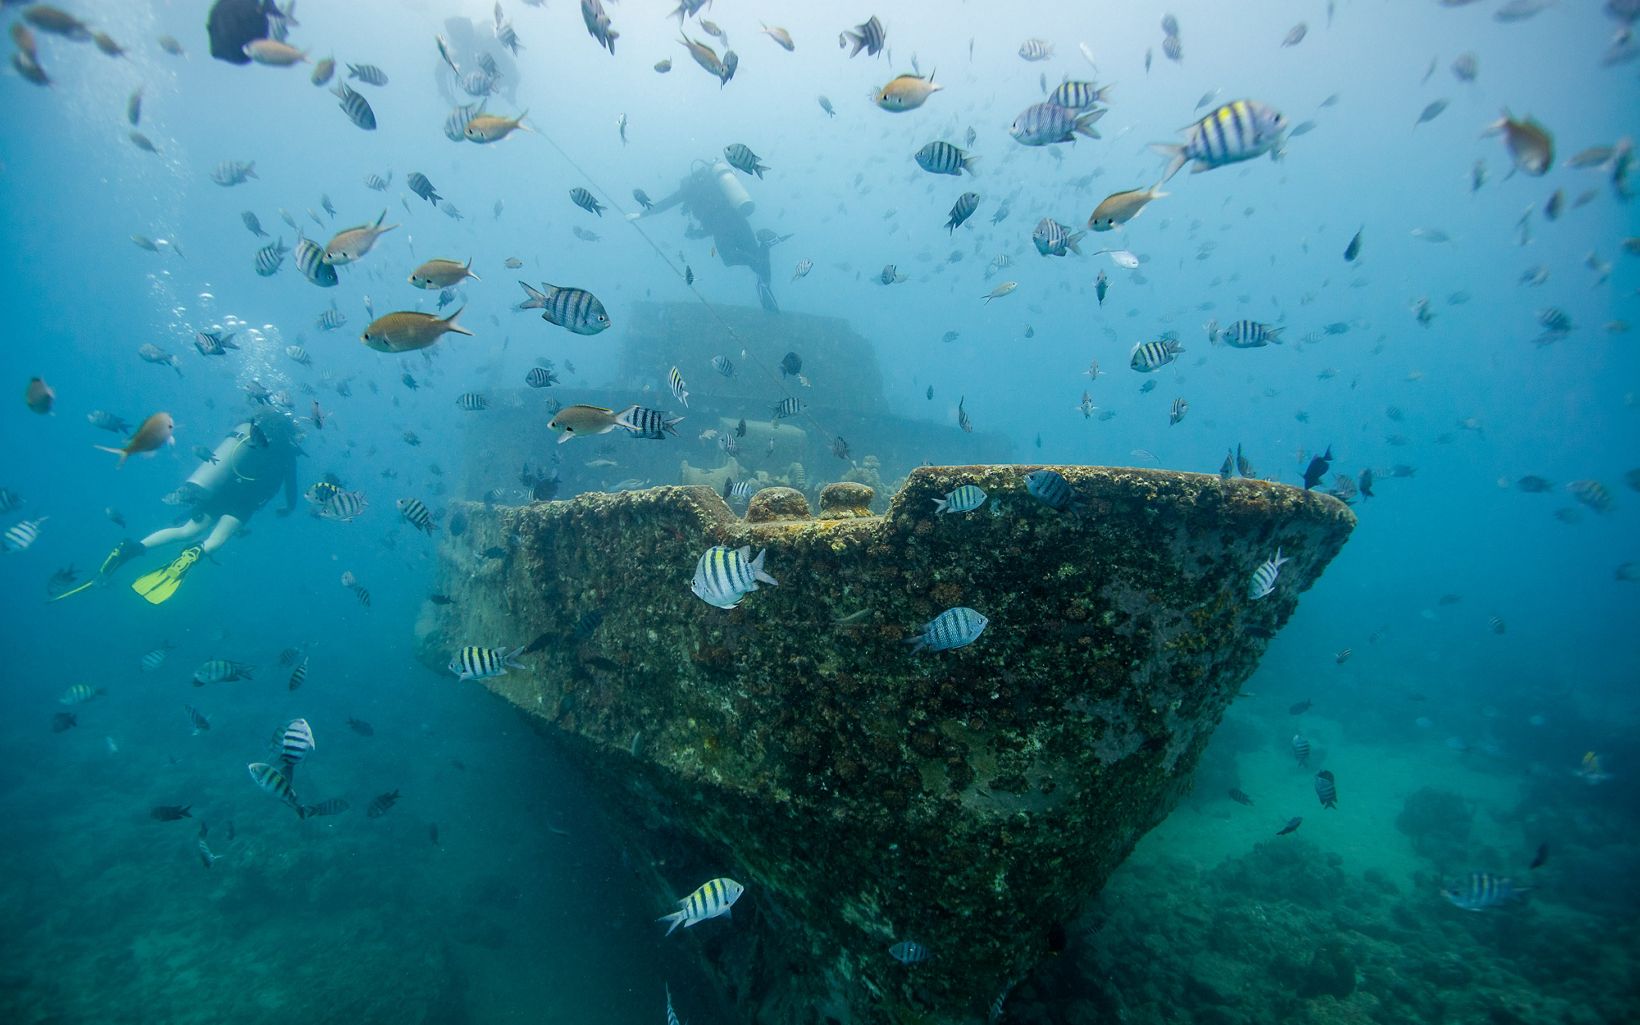 Shipwreck off the coast of the Dominican Republic.